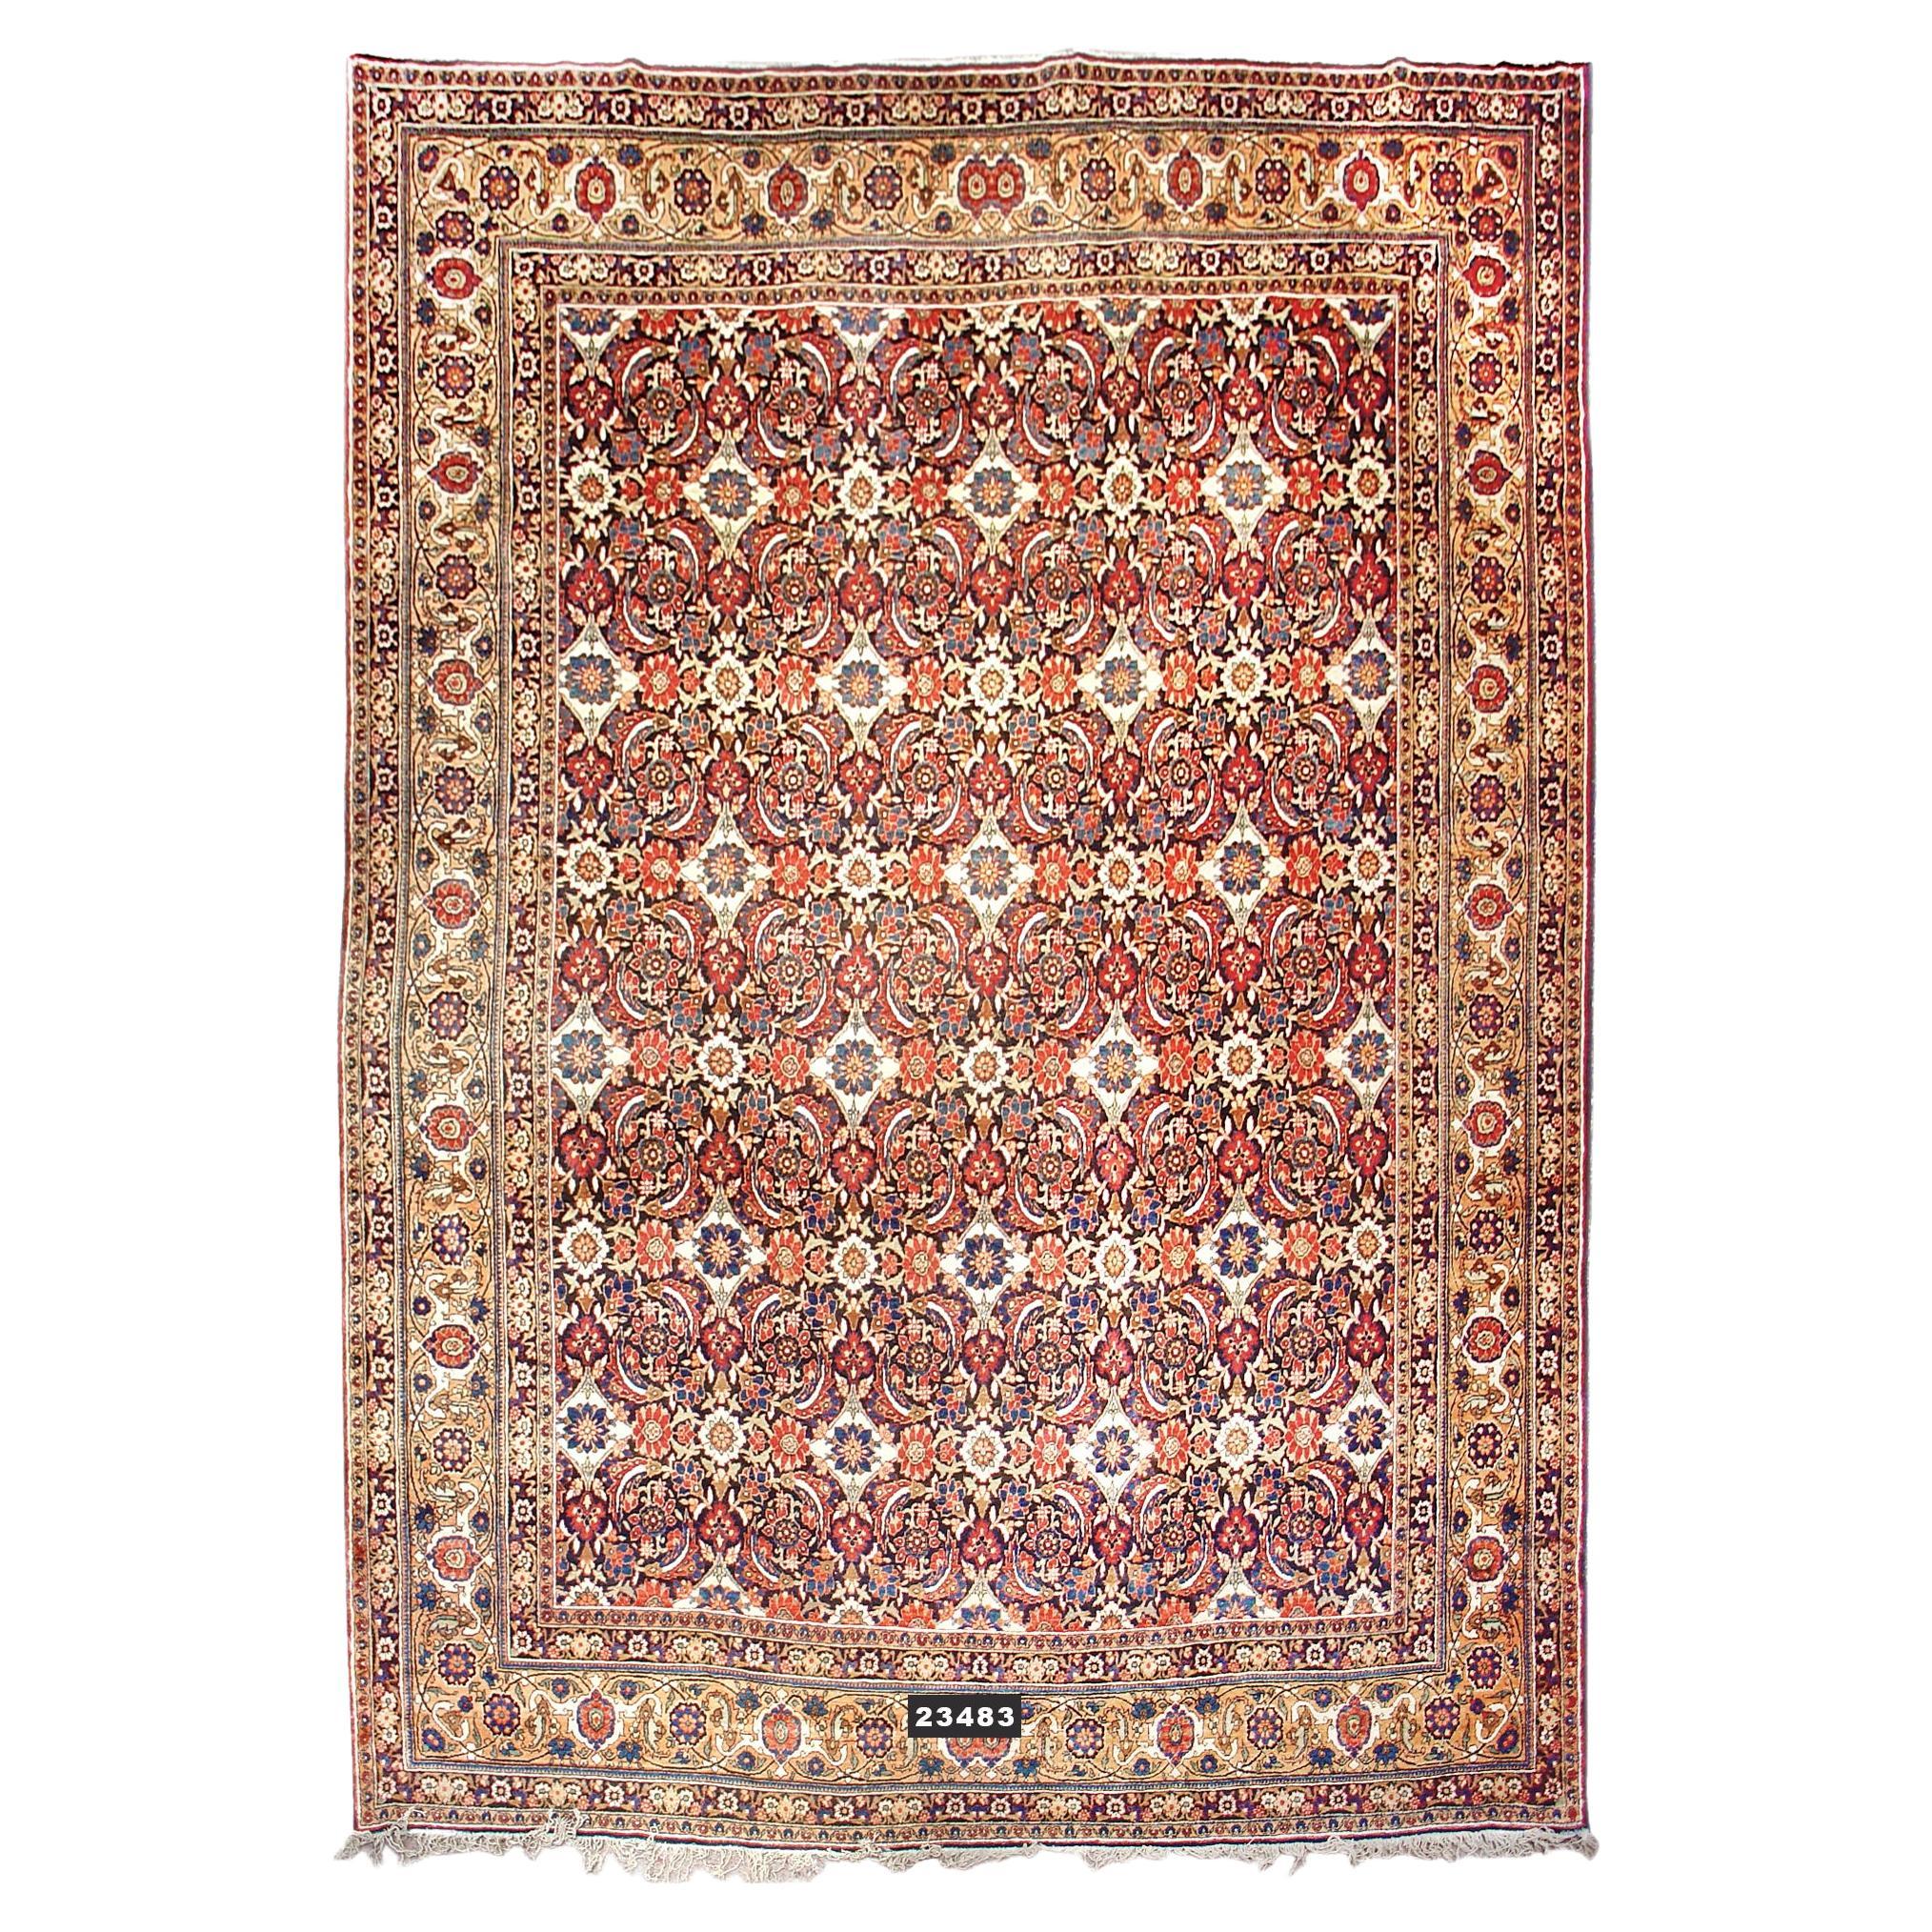 Antique Persian Yezd Carpet, c. 1900